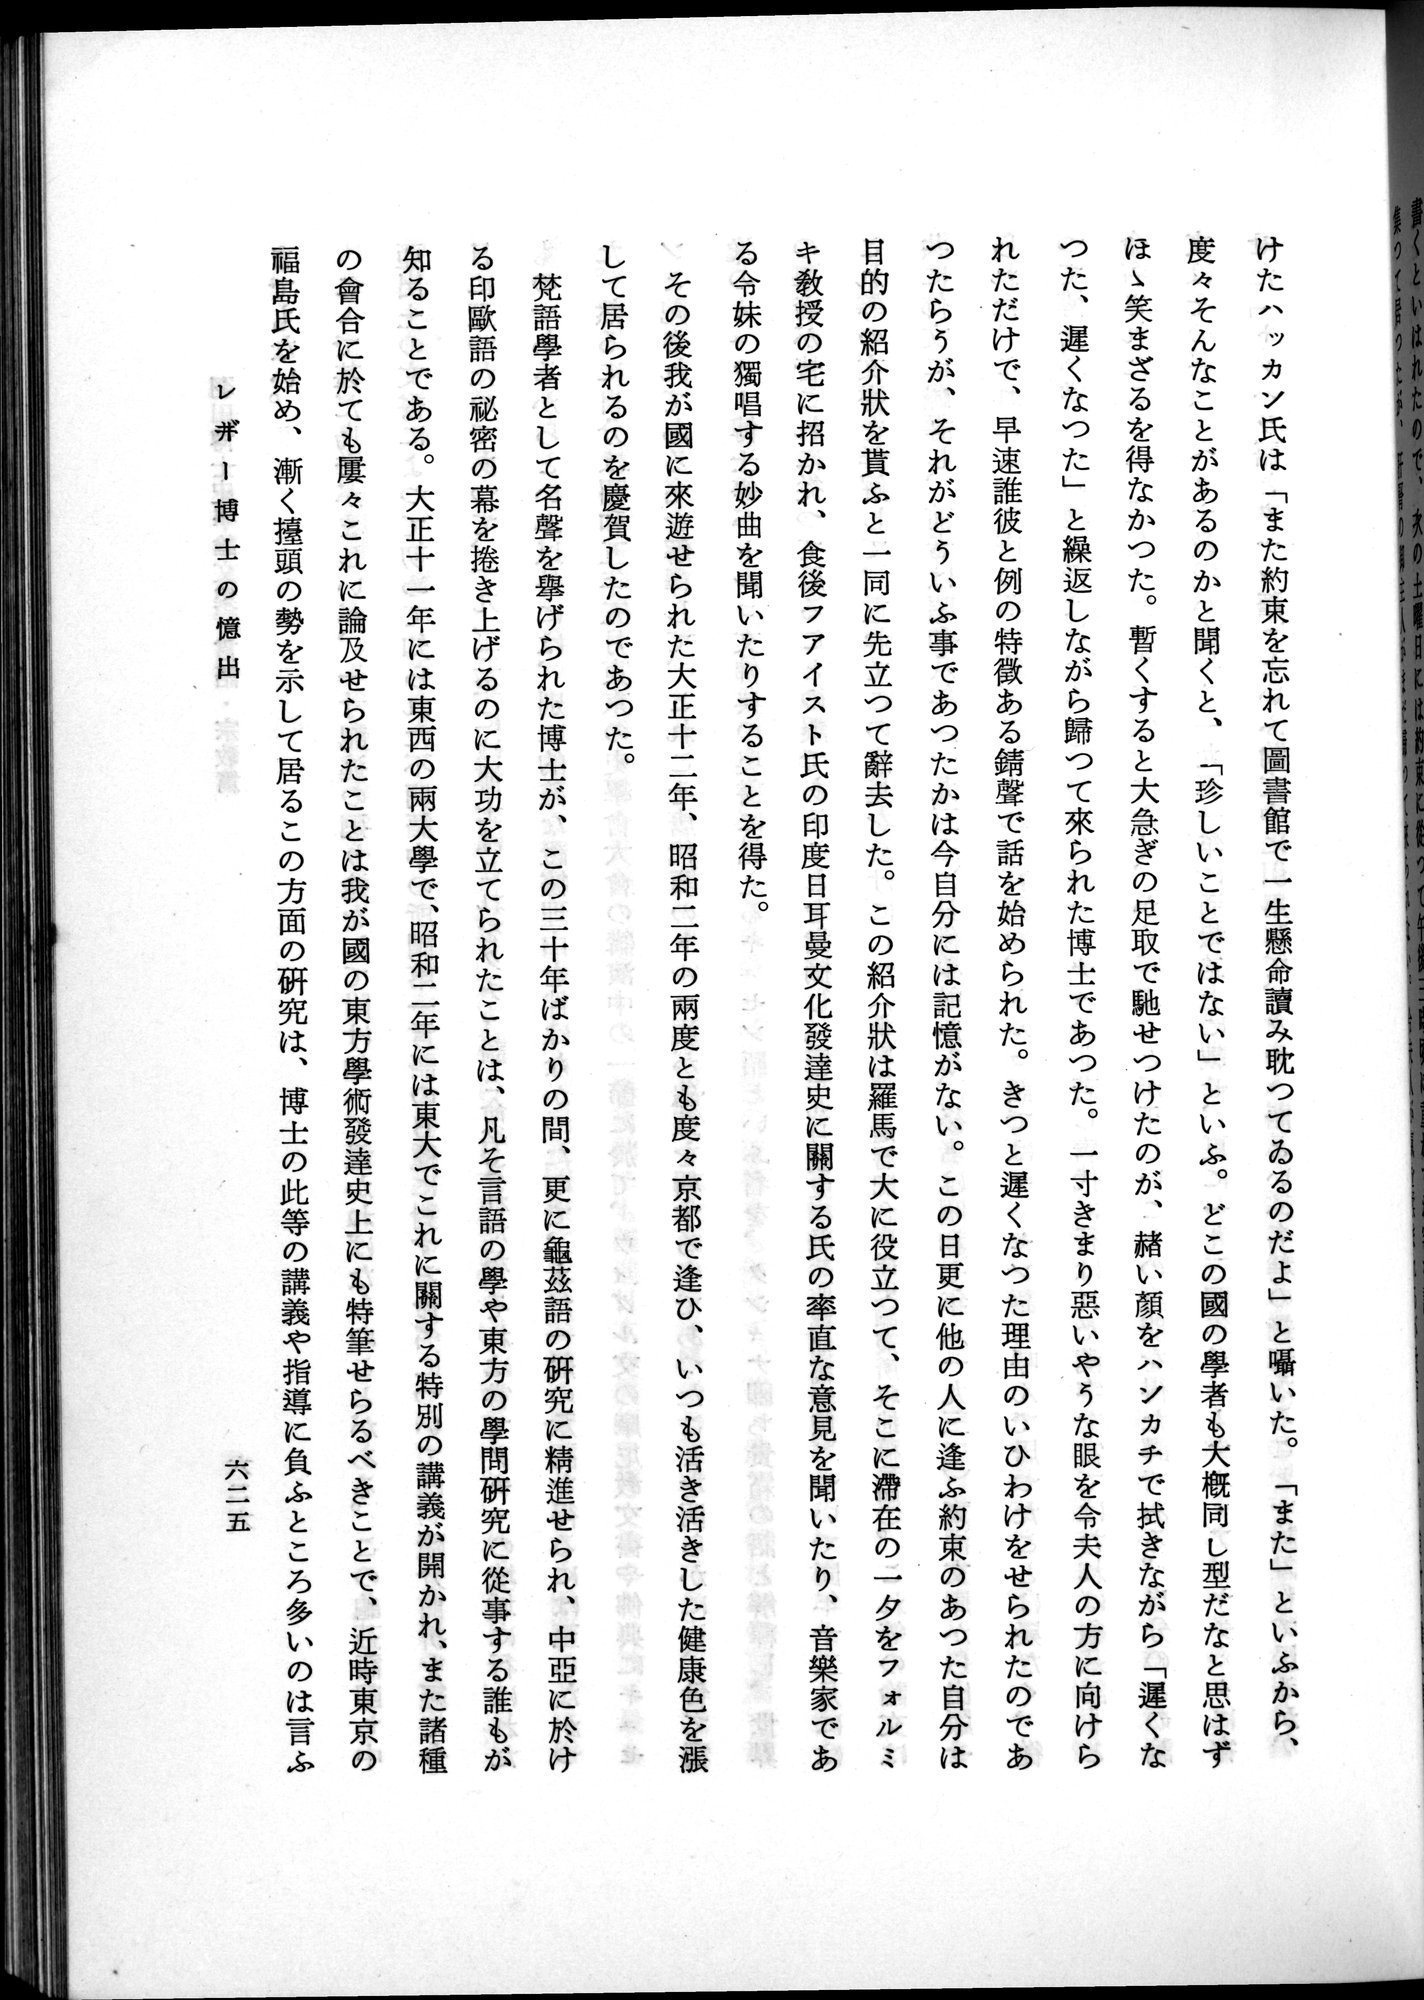 羽田博士史学論文集 : vol.2 / 689 ページ（白黒高解像度画像）